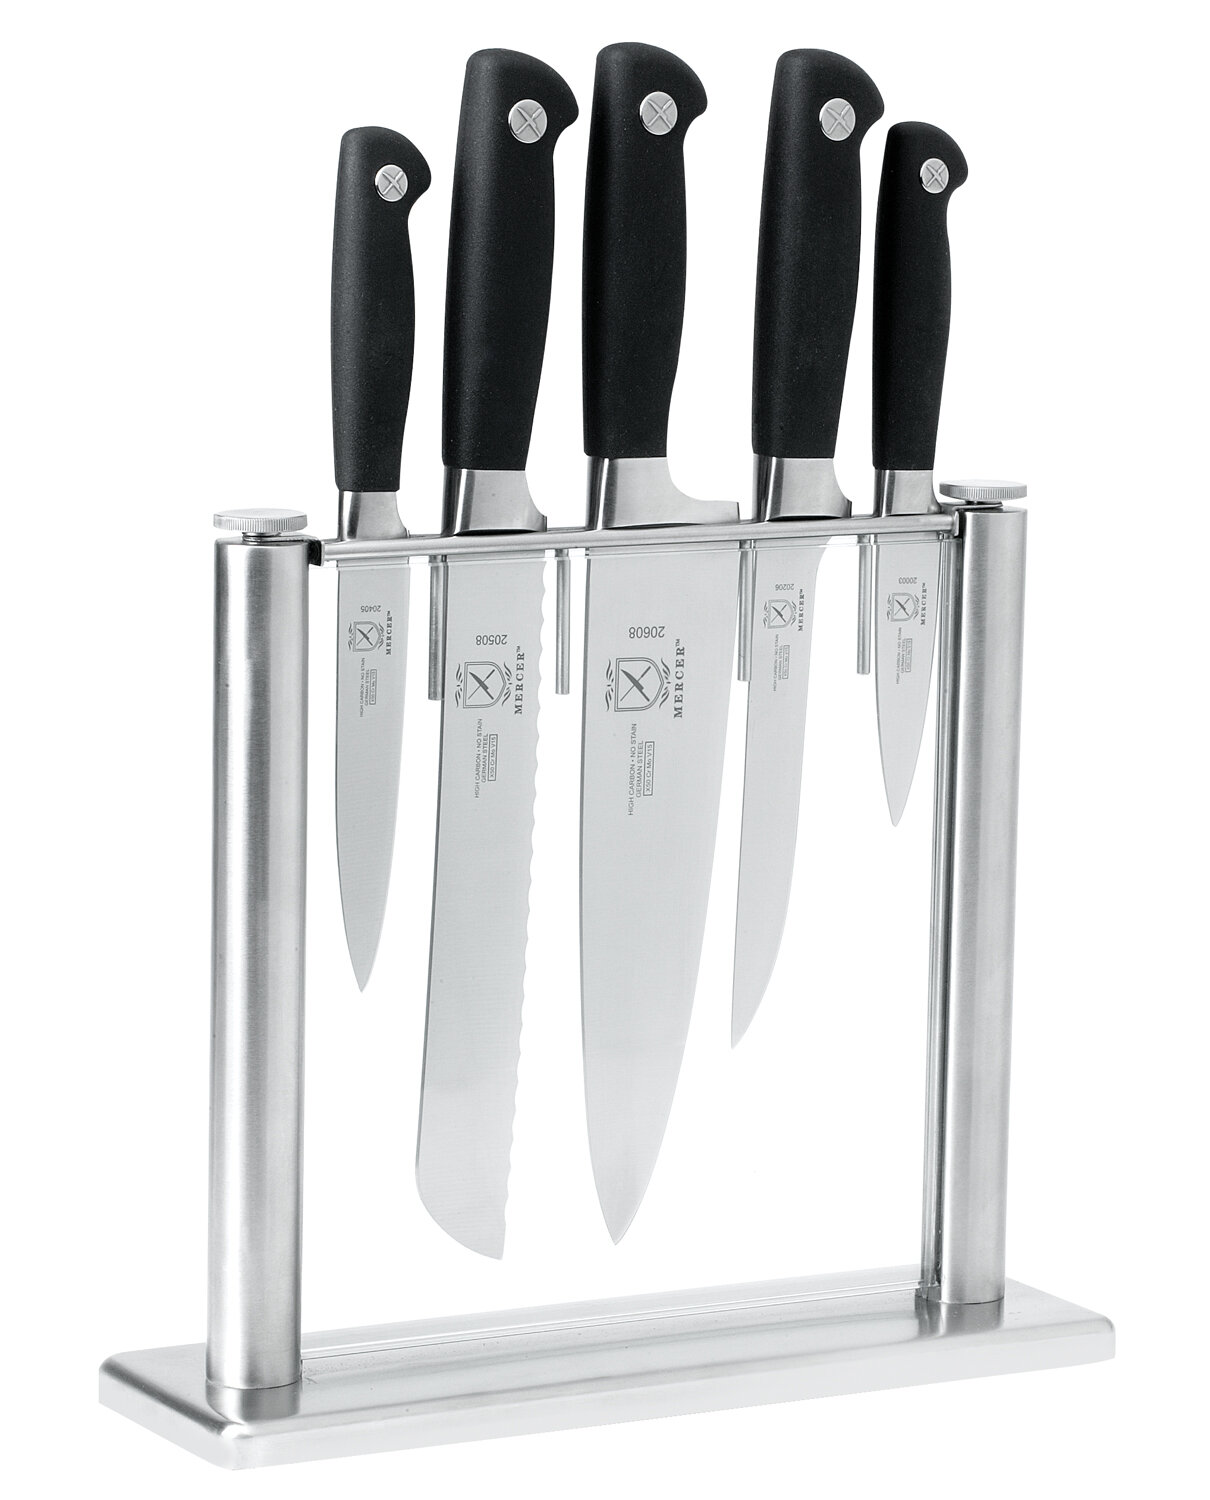 https://assets.wfcdn.com/im/37498911/compr-r85/5291/5291039/mercer-cutlery-genesis-6-piece-stainless-steel-knife-block-set.jpg